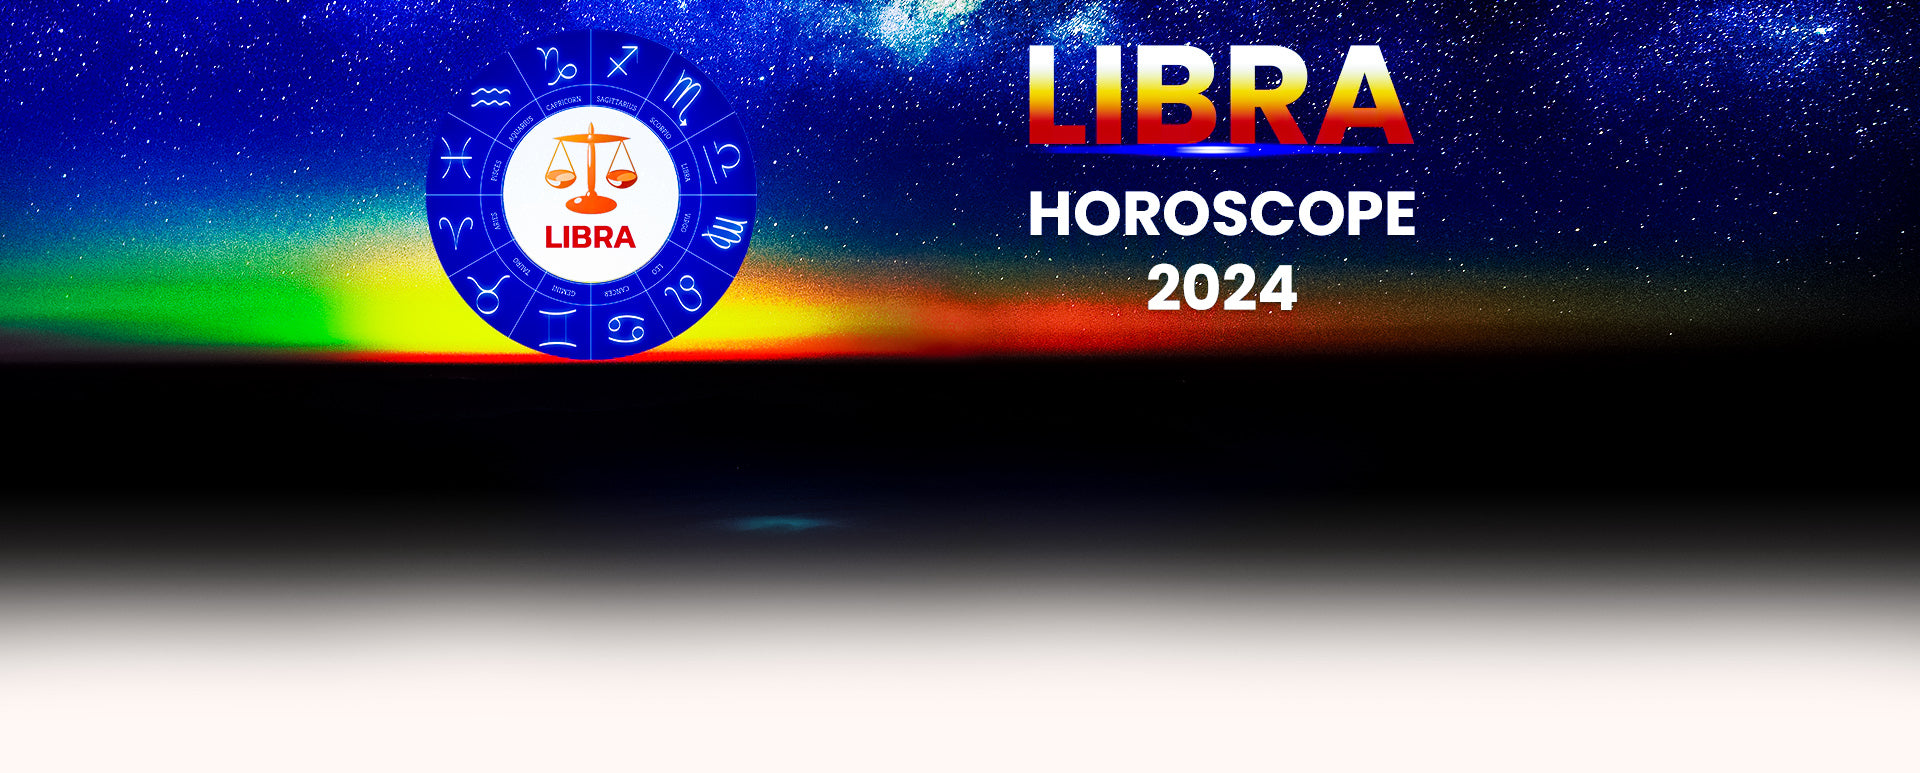 Horoscope 2024 Libra Tagalog Lela Shawna